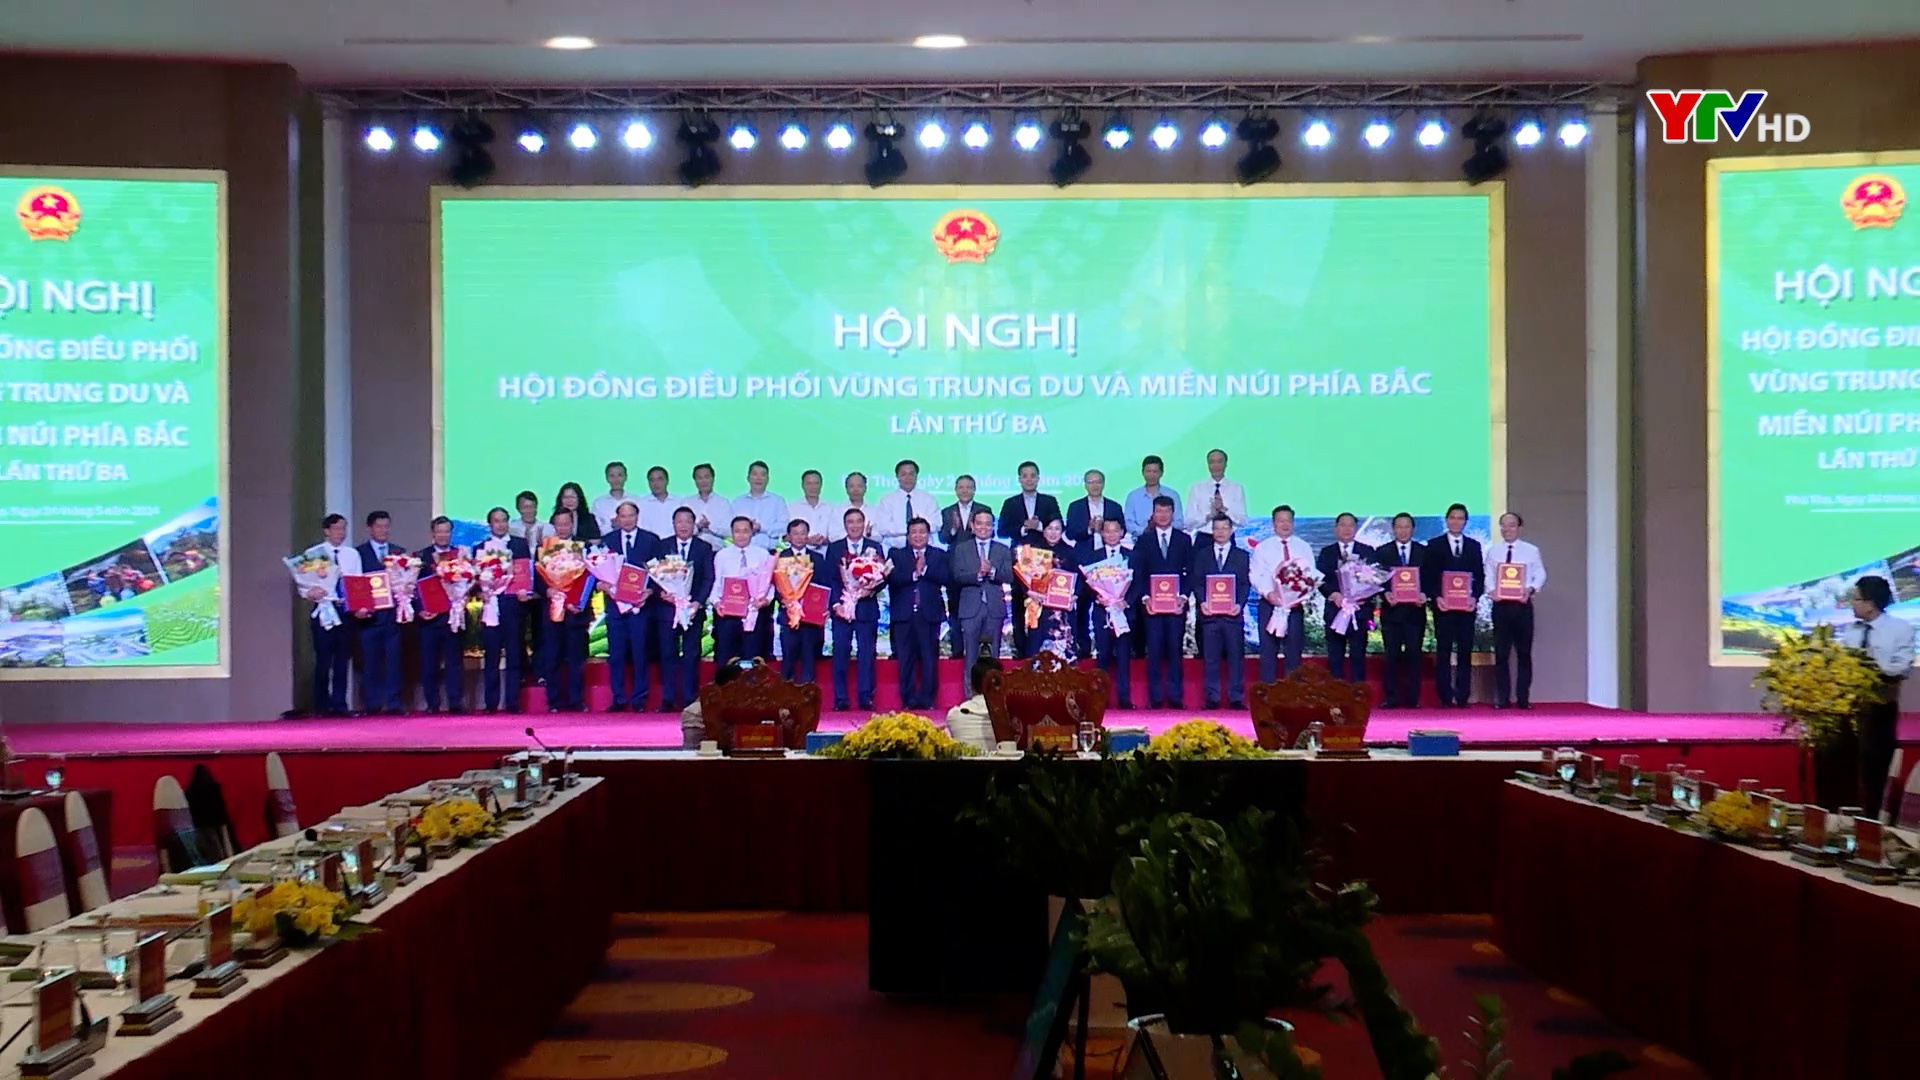 Các đồng chí lãnh đạo tỉnh Yên Bái dự Lễ công bố Quy hoạch vùng Trung du và miền núi phía Bắc